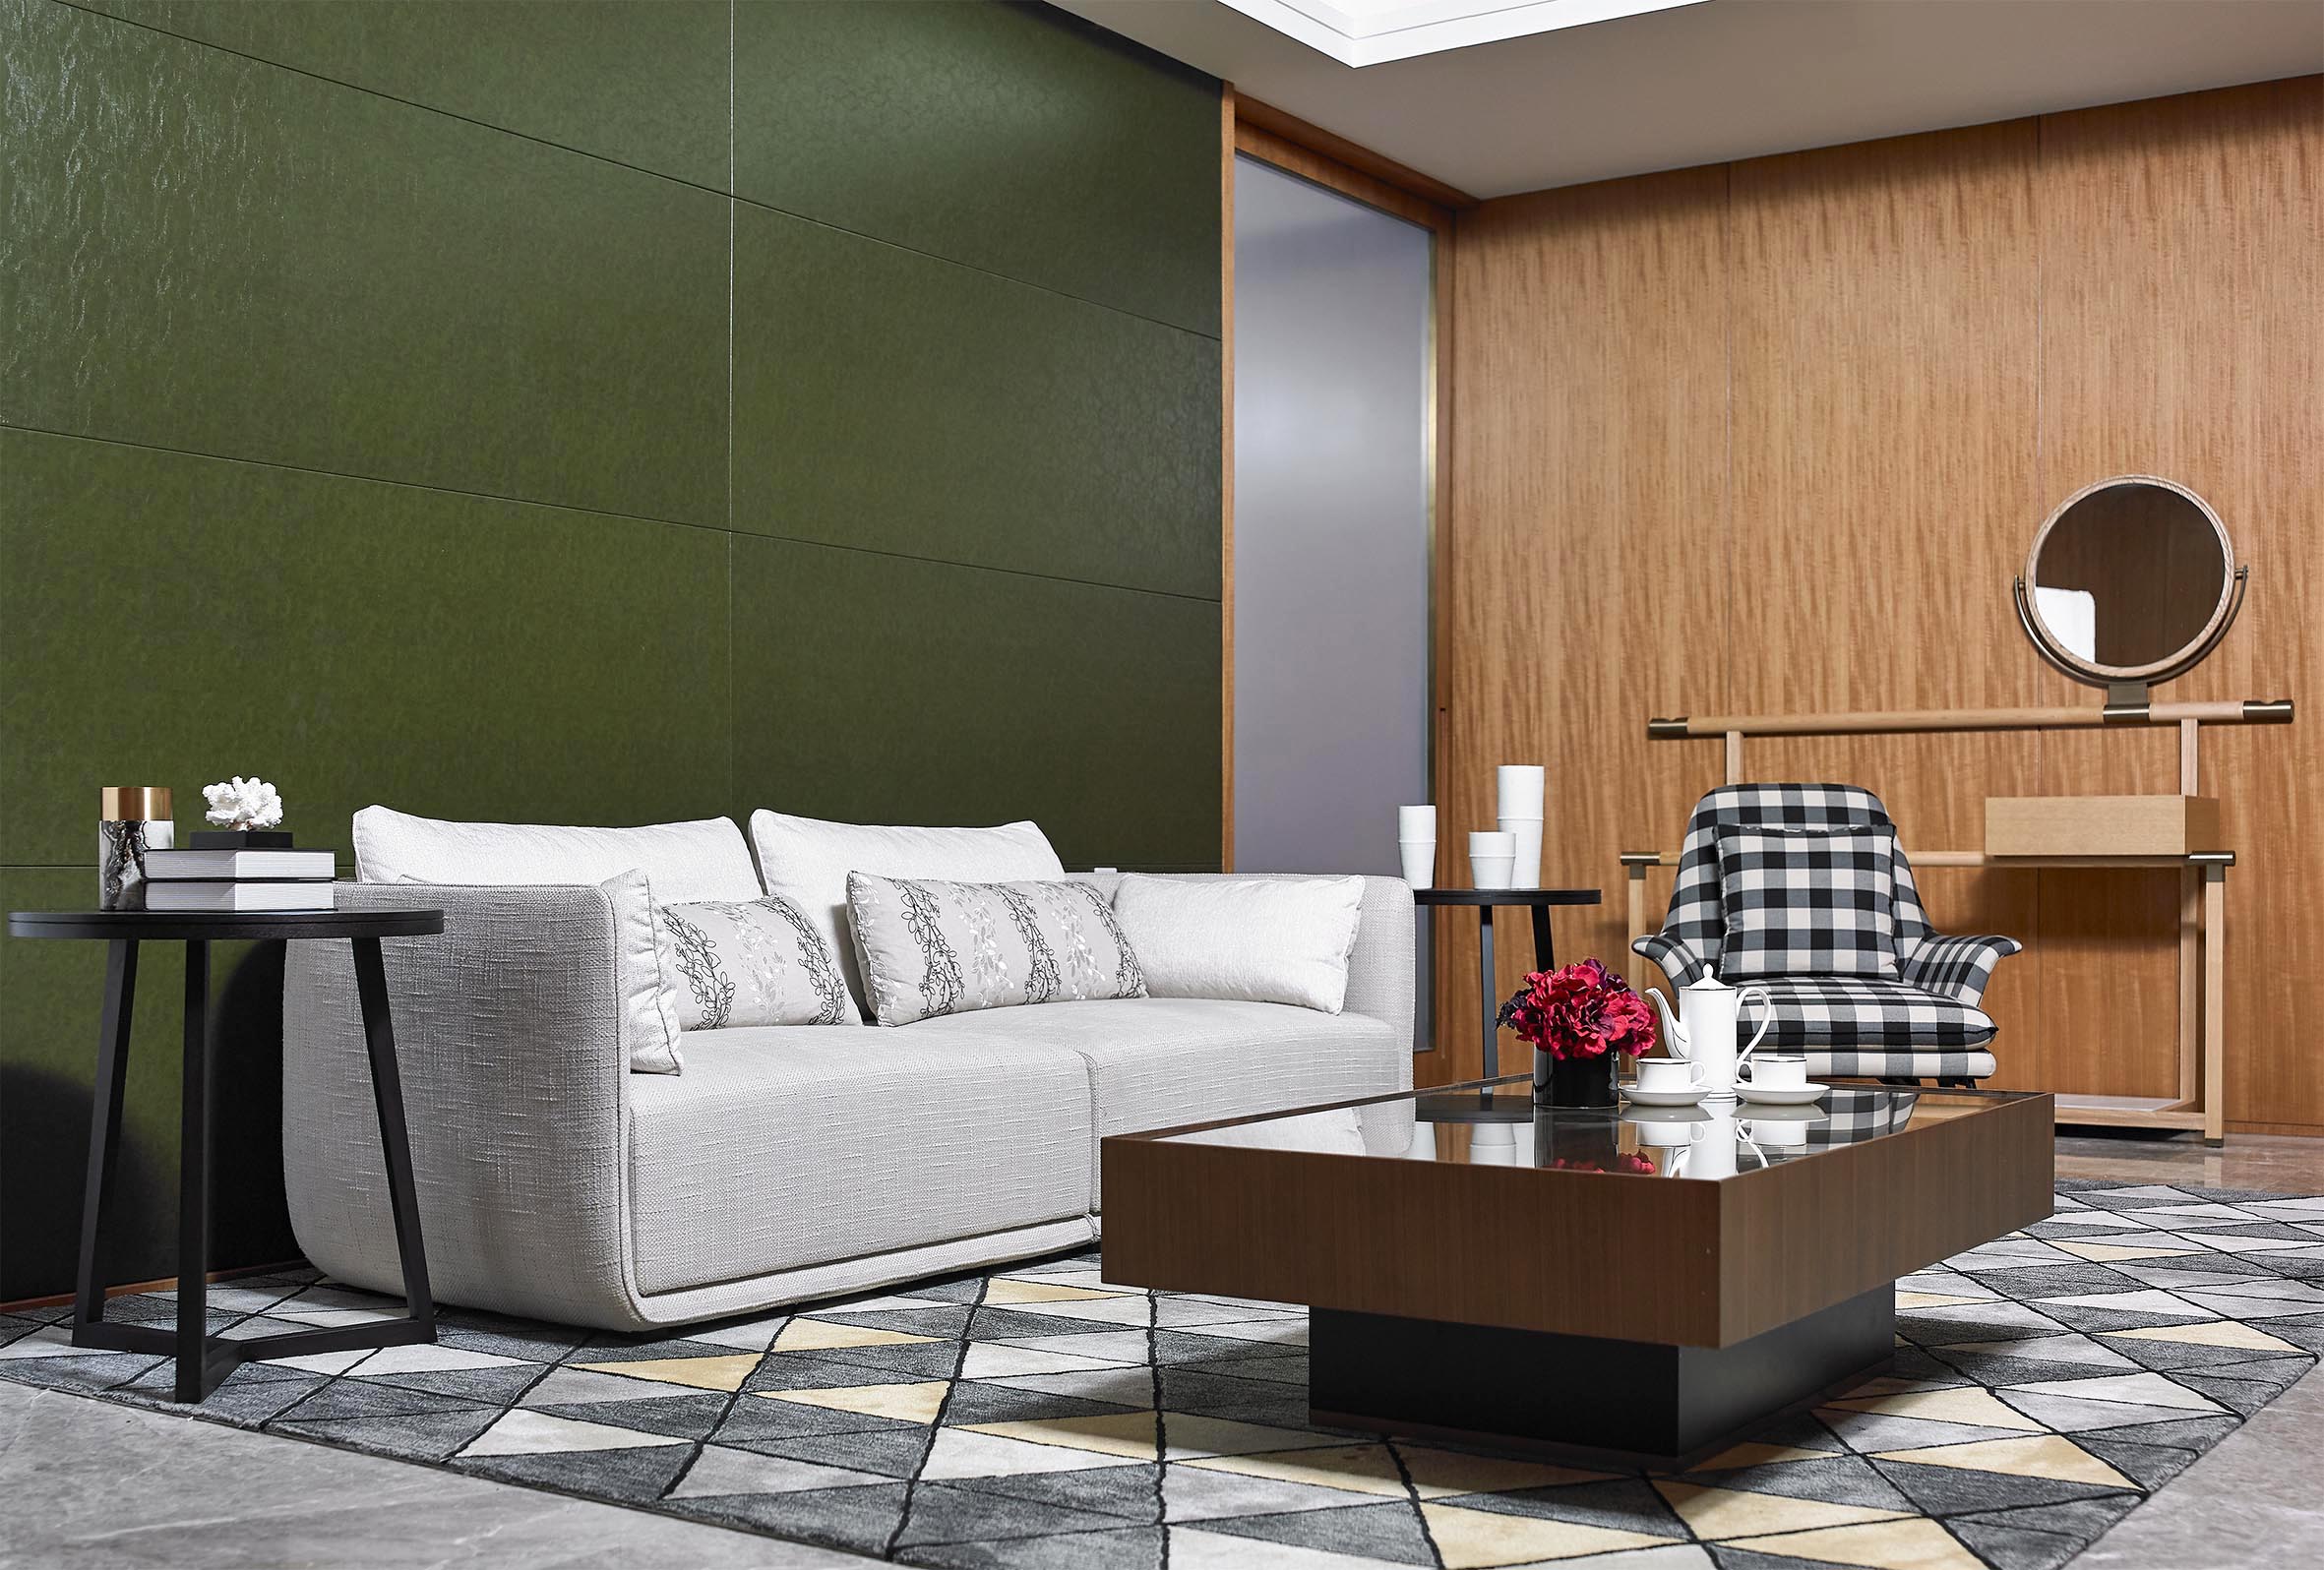 يمكن تخصيص الصين الحديثة المصممة مجموعة أريكة فاخرة أثاث غرفة المعيشة السكنية